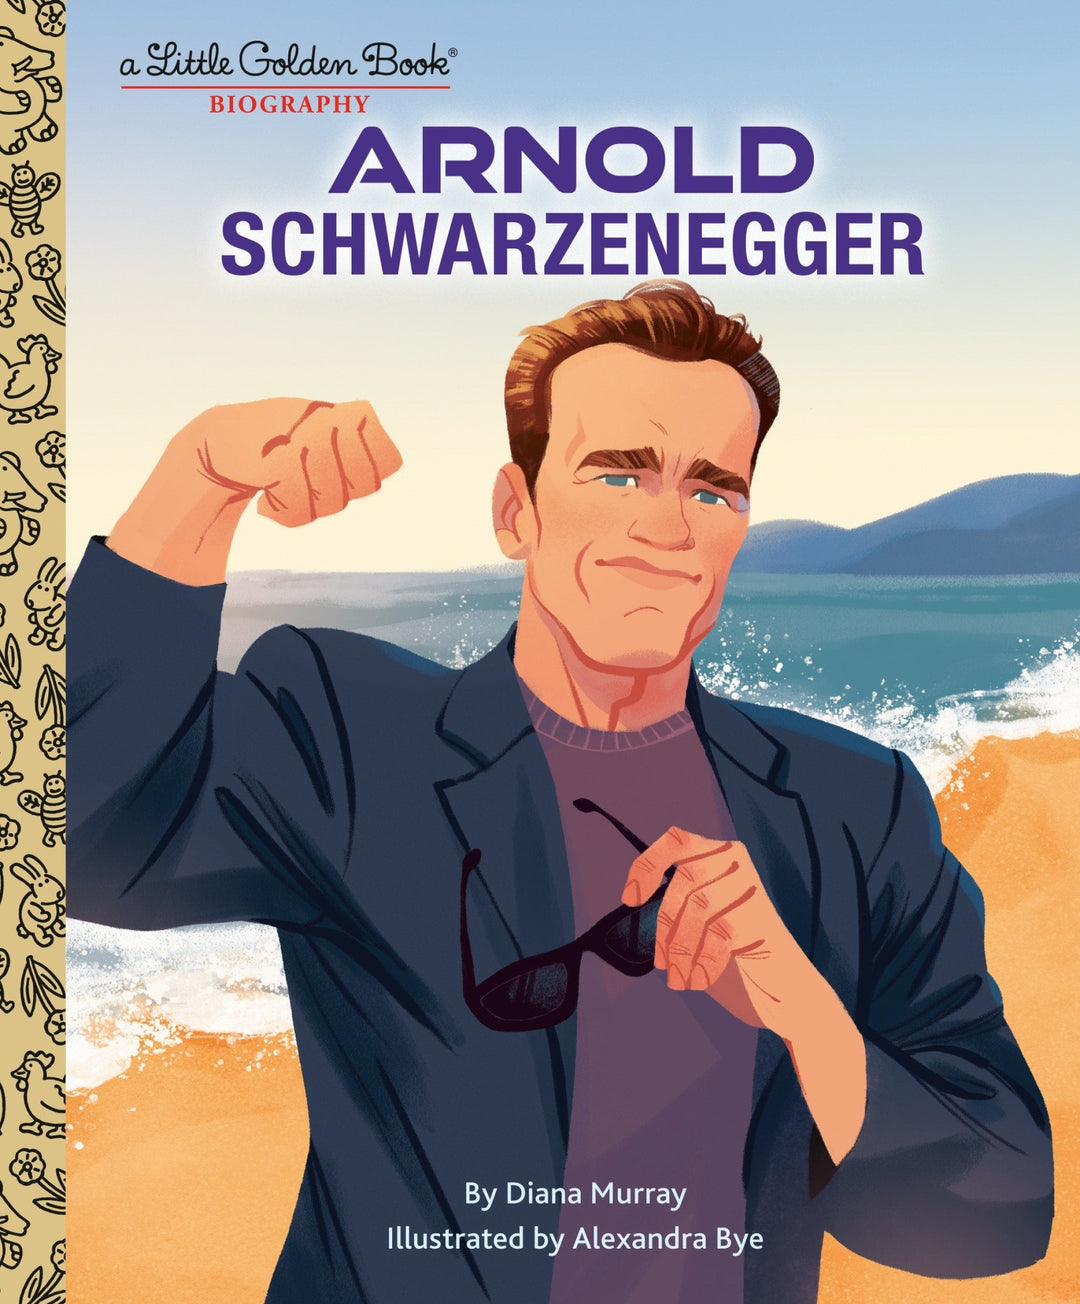 Arnold Schwarzenegger: A Little Golden Book Biography - gabescaveccc